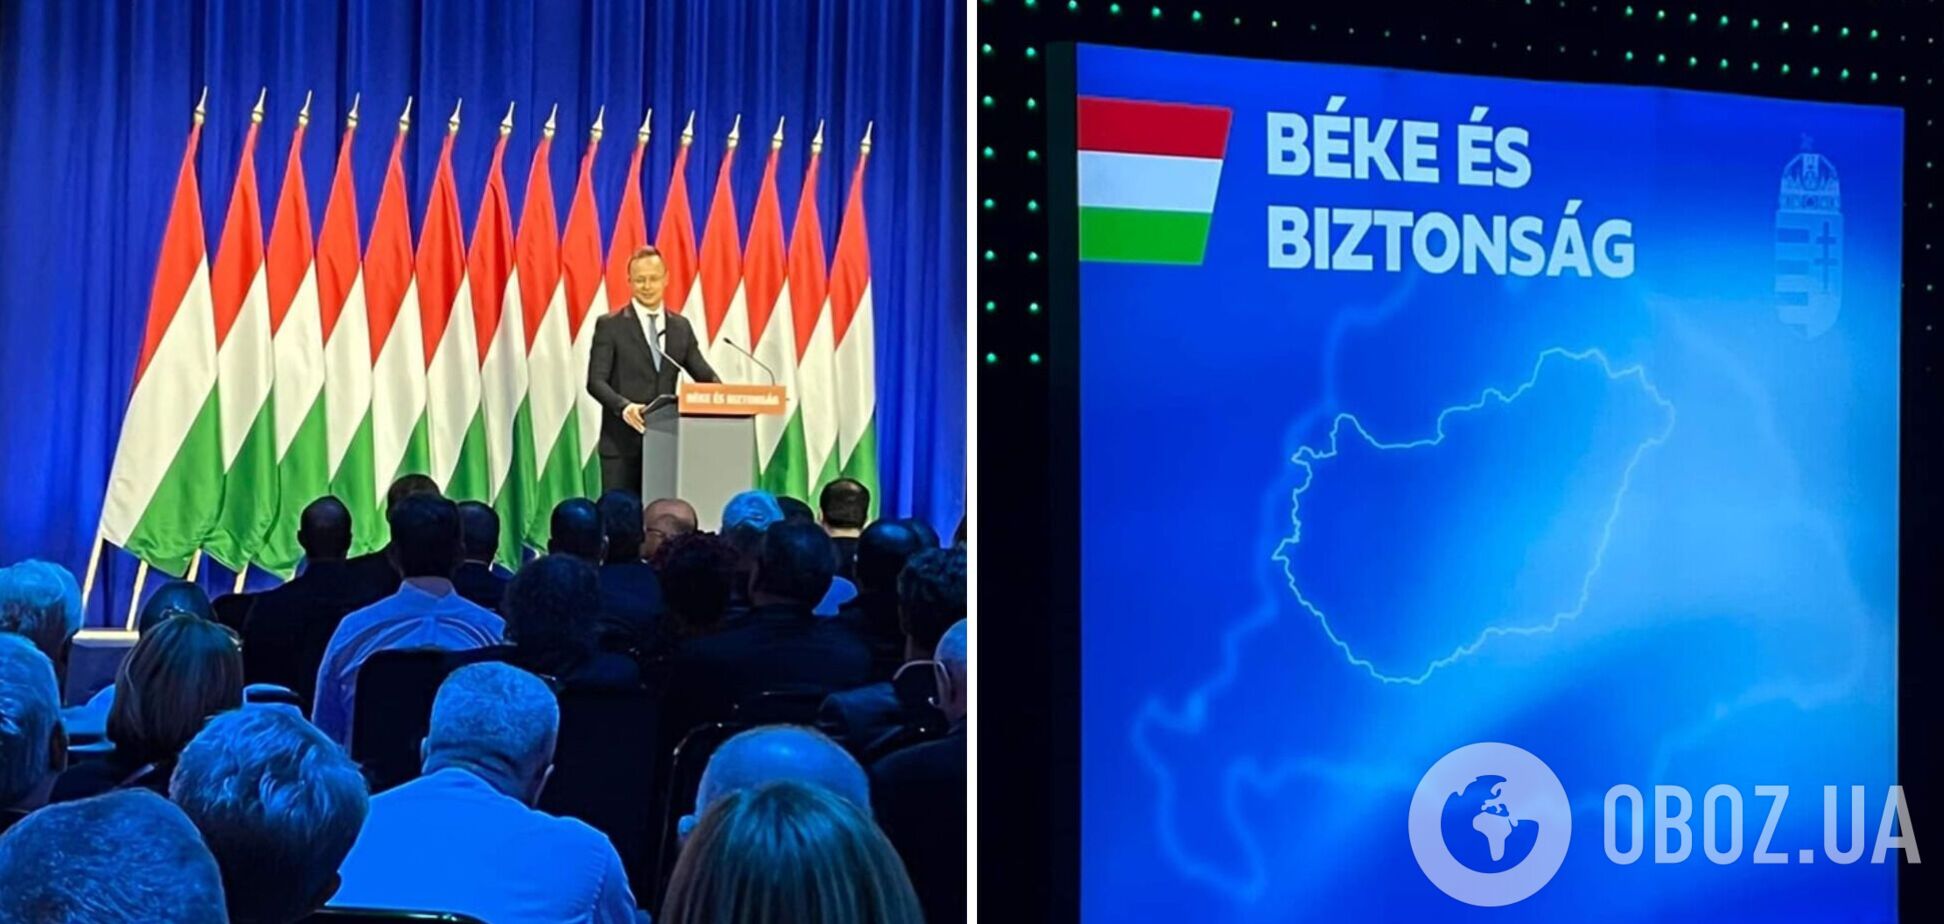 Сіярто виступив на тлі карти 'Великої Угорщини' під час заходу партії Орбана 'Фідес'. Фото